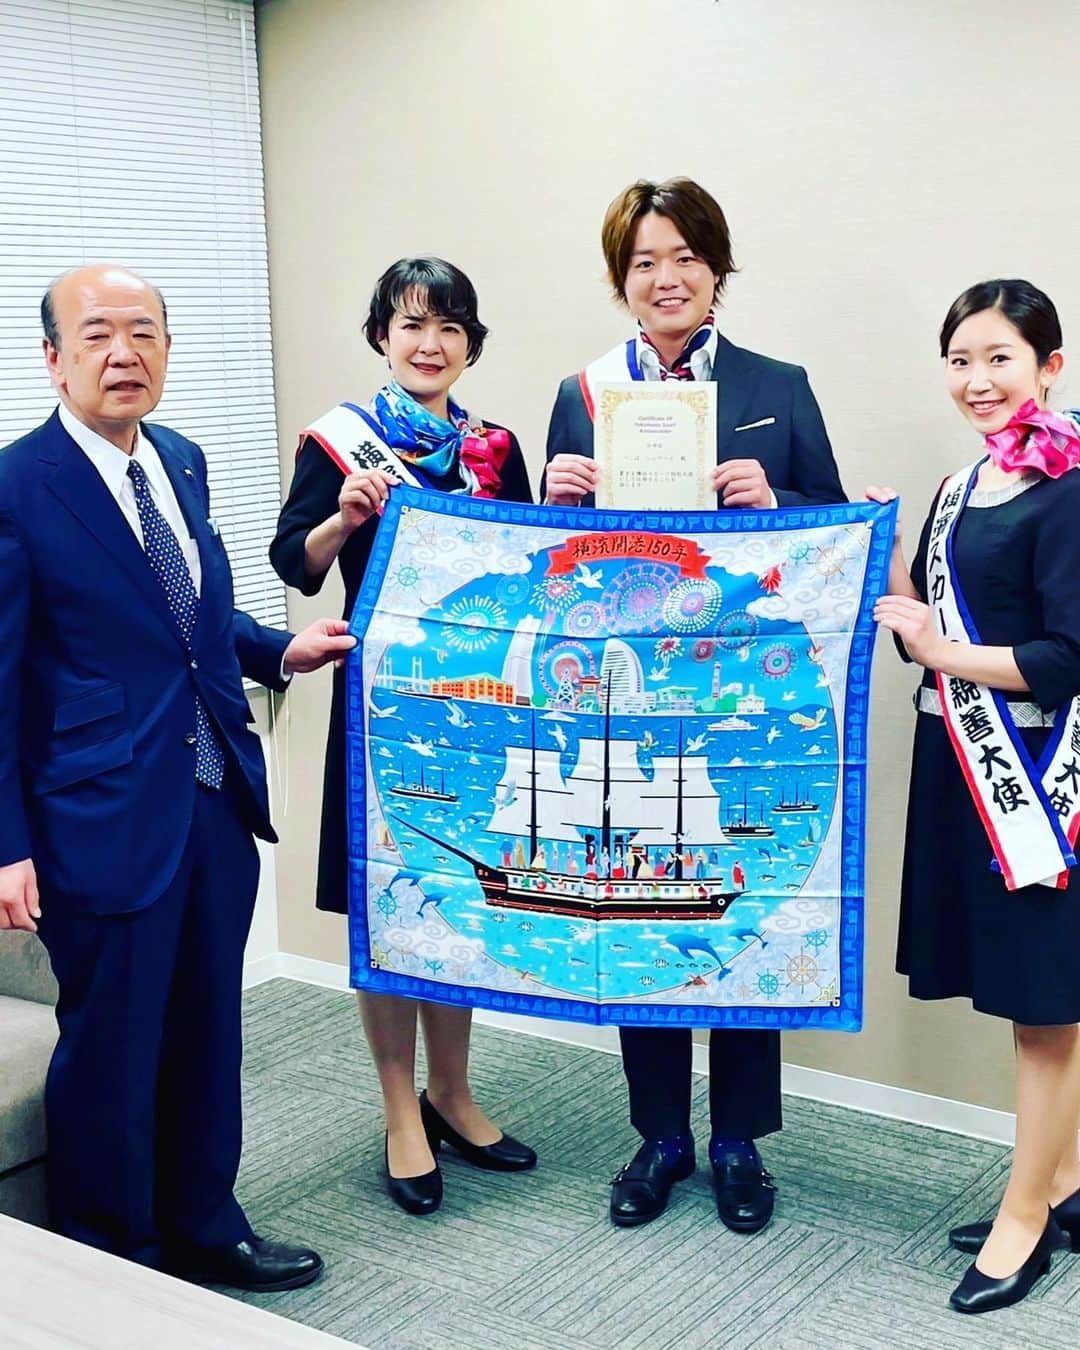 しゅうぺいのインスタグラム：「この度素敵なご縁があって 地元横浜の横浜スカーフ特別大使に任命されました✨ ありがとうございます！ スカーフの魅力や横浜の魅力を発揮できたらと思ってます🛳 皆さんよろしくお願いします😊  ※実は成人式でスカーフ着用してました。  #横浜スカーフ特別大使 #シュウペイが大使になる日がくるなんて #スカーフ #横浜 #みなとみらい #開港記念日 #だれおる #村上さんに感謝 #ギャル男 #成人式 #シュウペイポーズ」